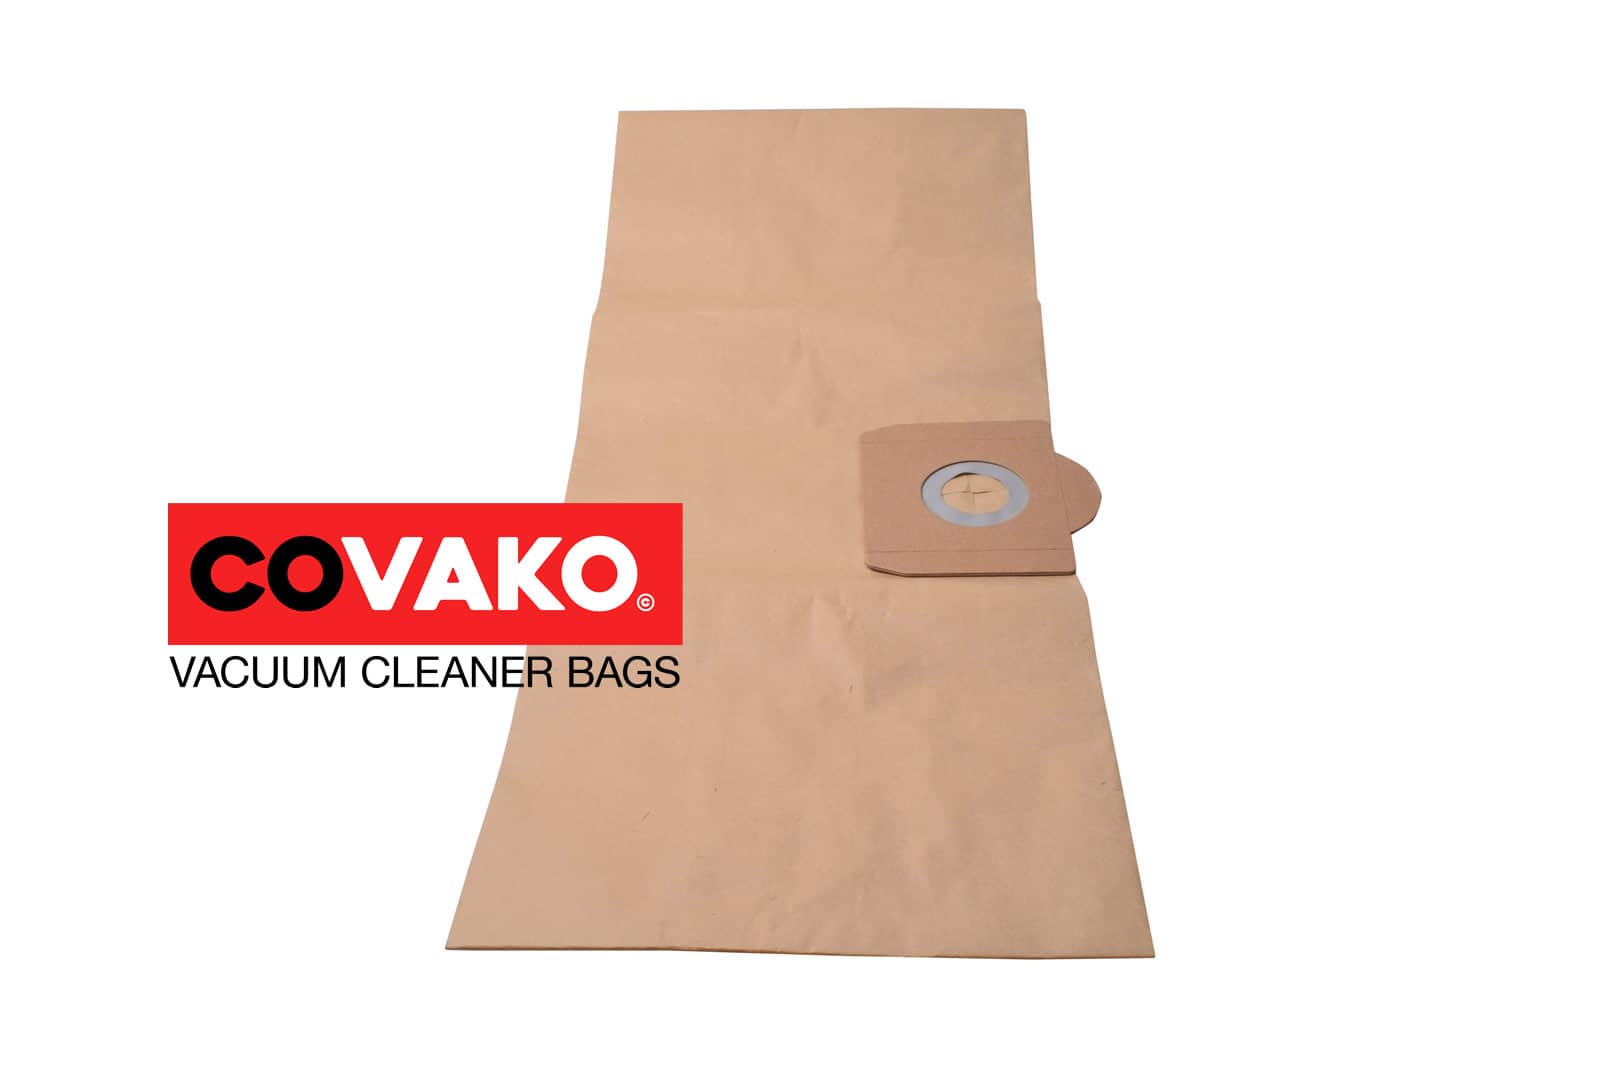 Elsea ares ADP 130 / Paper - Elsea vacuum cleaner bags